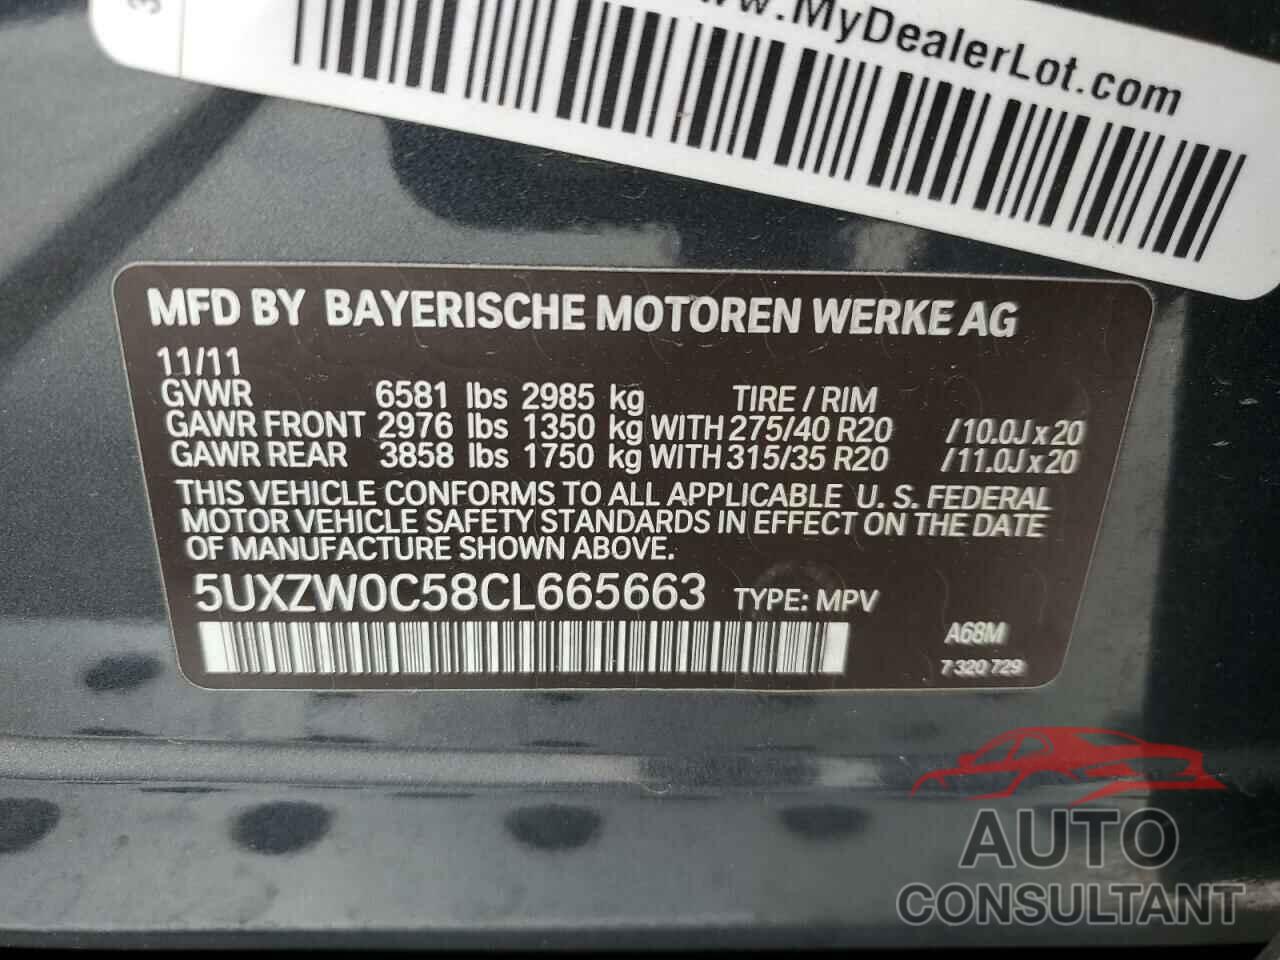 BMW X5 2012 - 5UXZW0C58CL665663